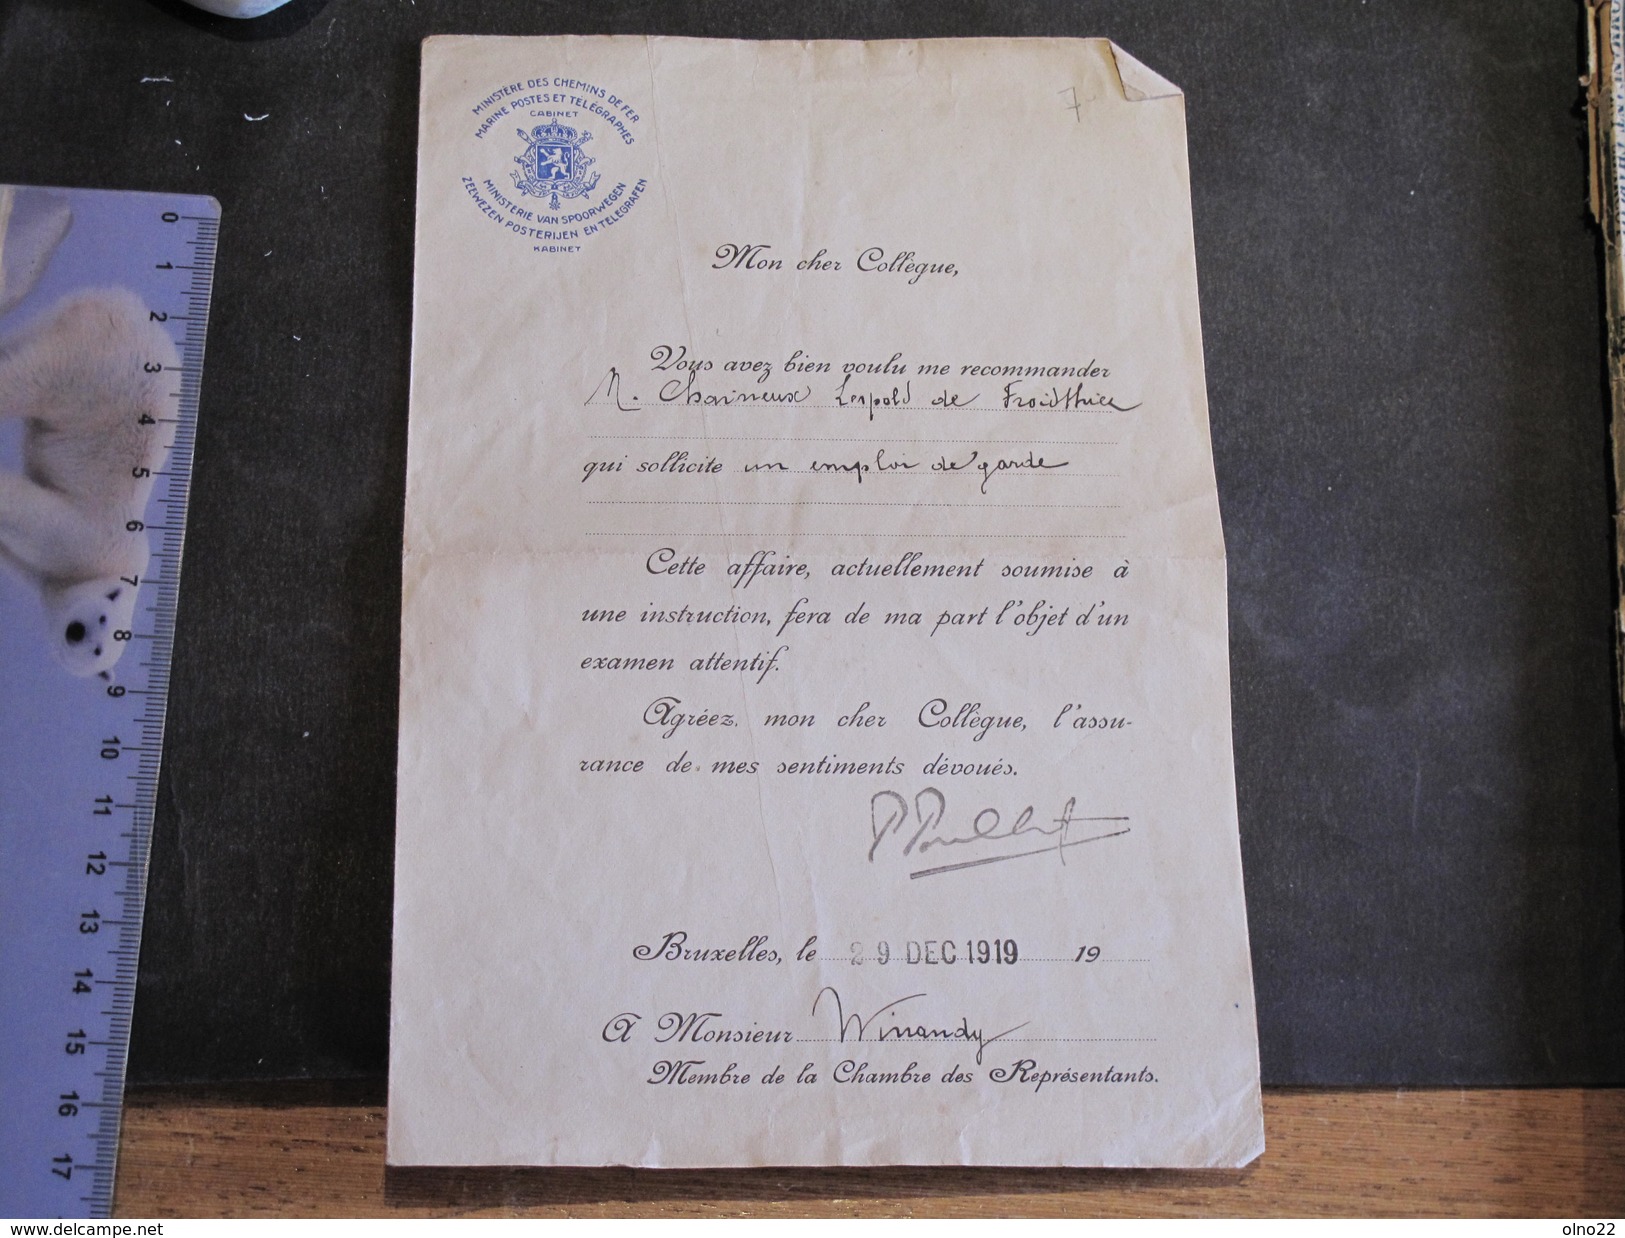 FROIDTHIER- Lettre De Recommandation De M WINANDY Relative à Un Emploi De Garde Pour CHAINEUX Léopold 29/128/19 - Manuscrits